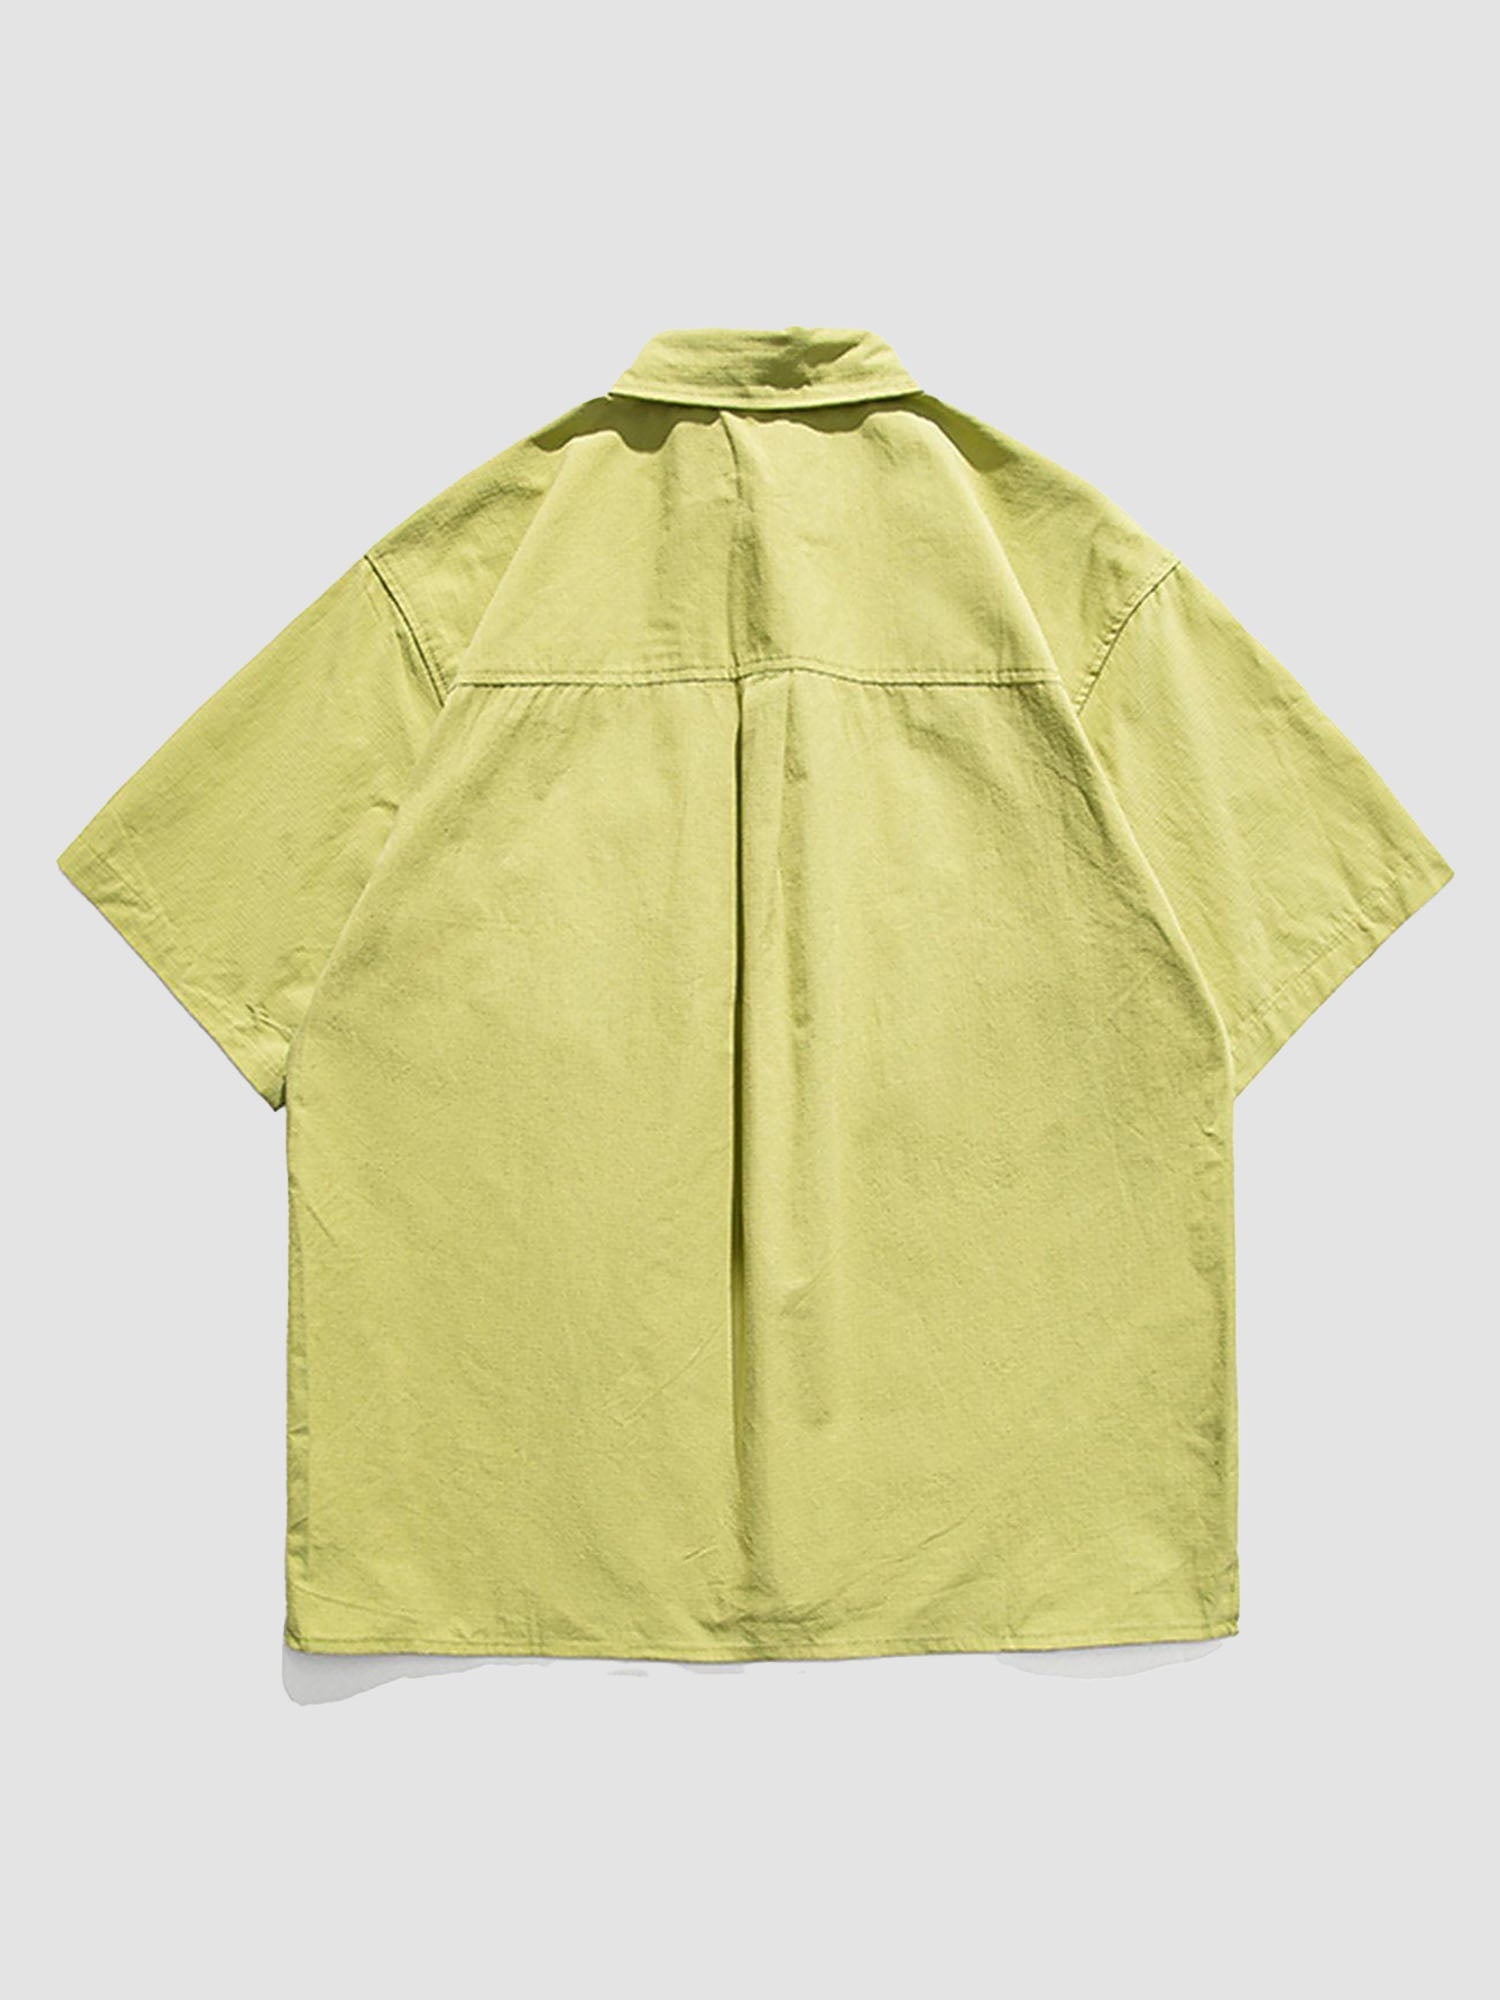 JUSTNOTAG Special Pocket Design Short Sleeve Shirts